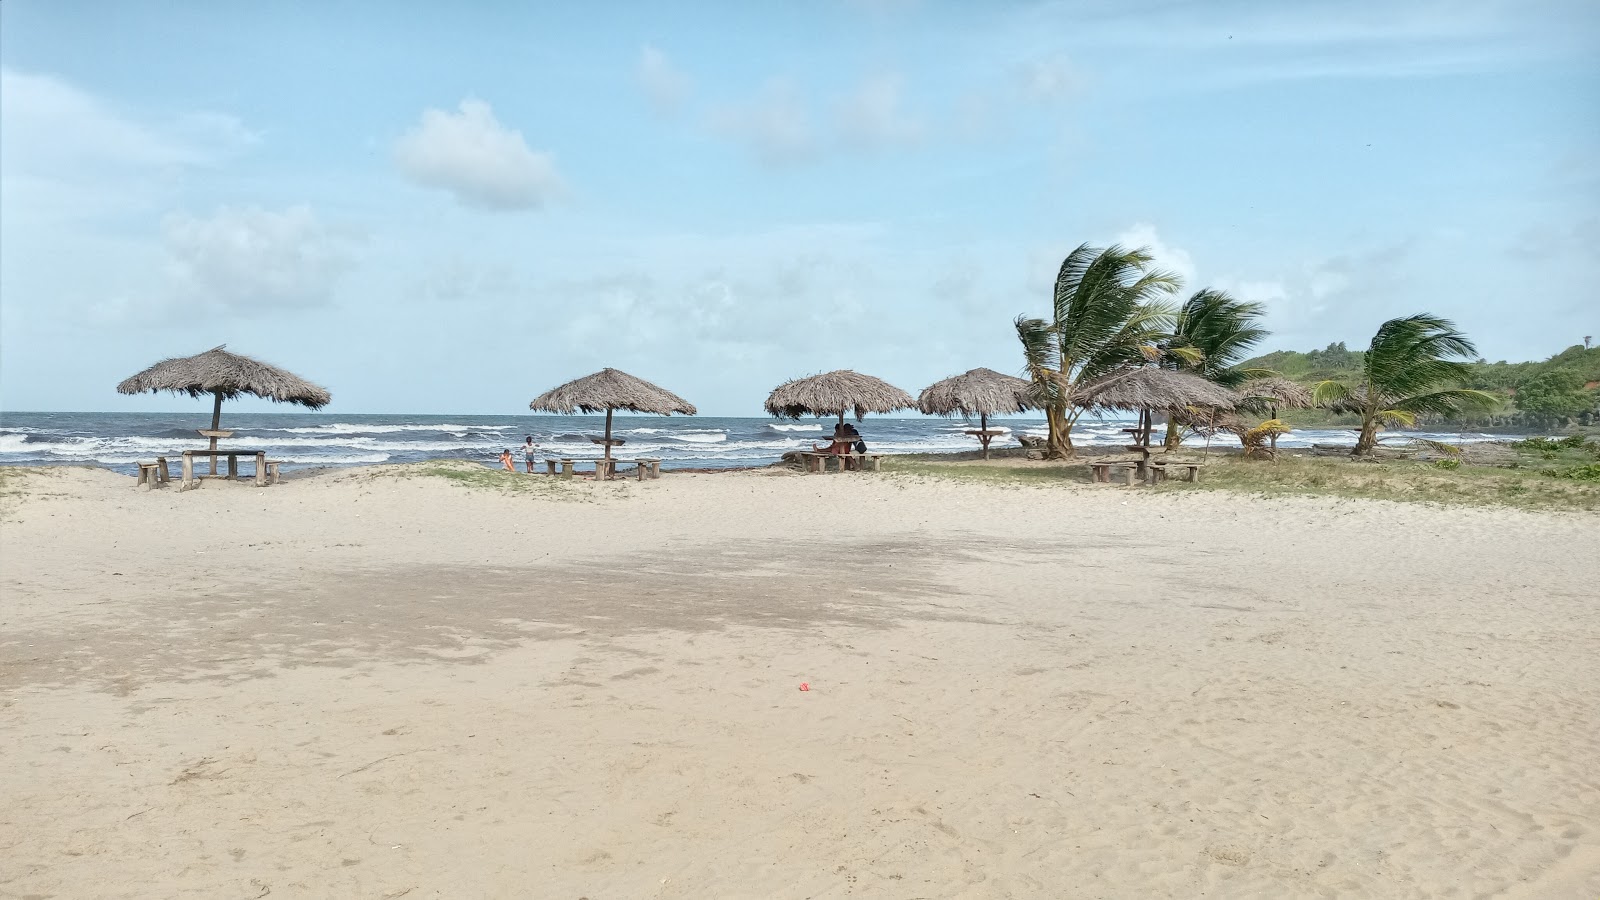 Zdjęcie Plaża El Bluff - popularne miejsce wśród znawców relaksu